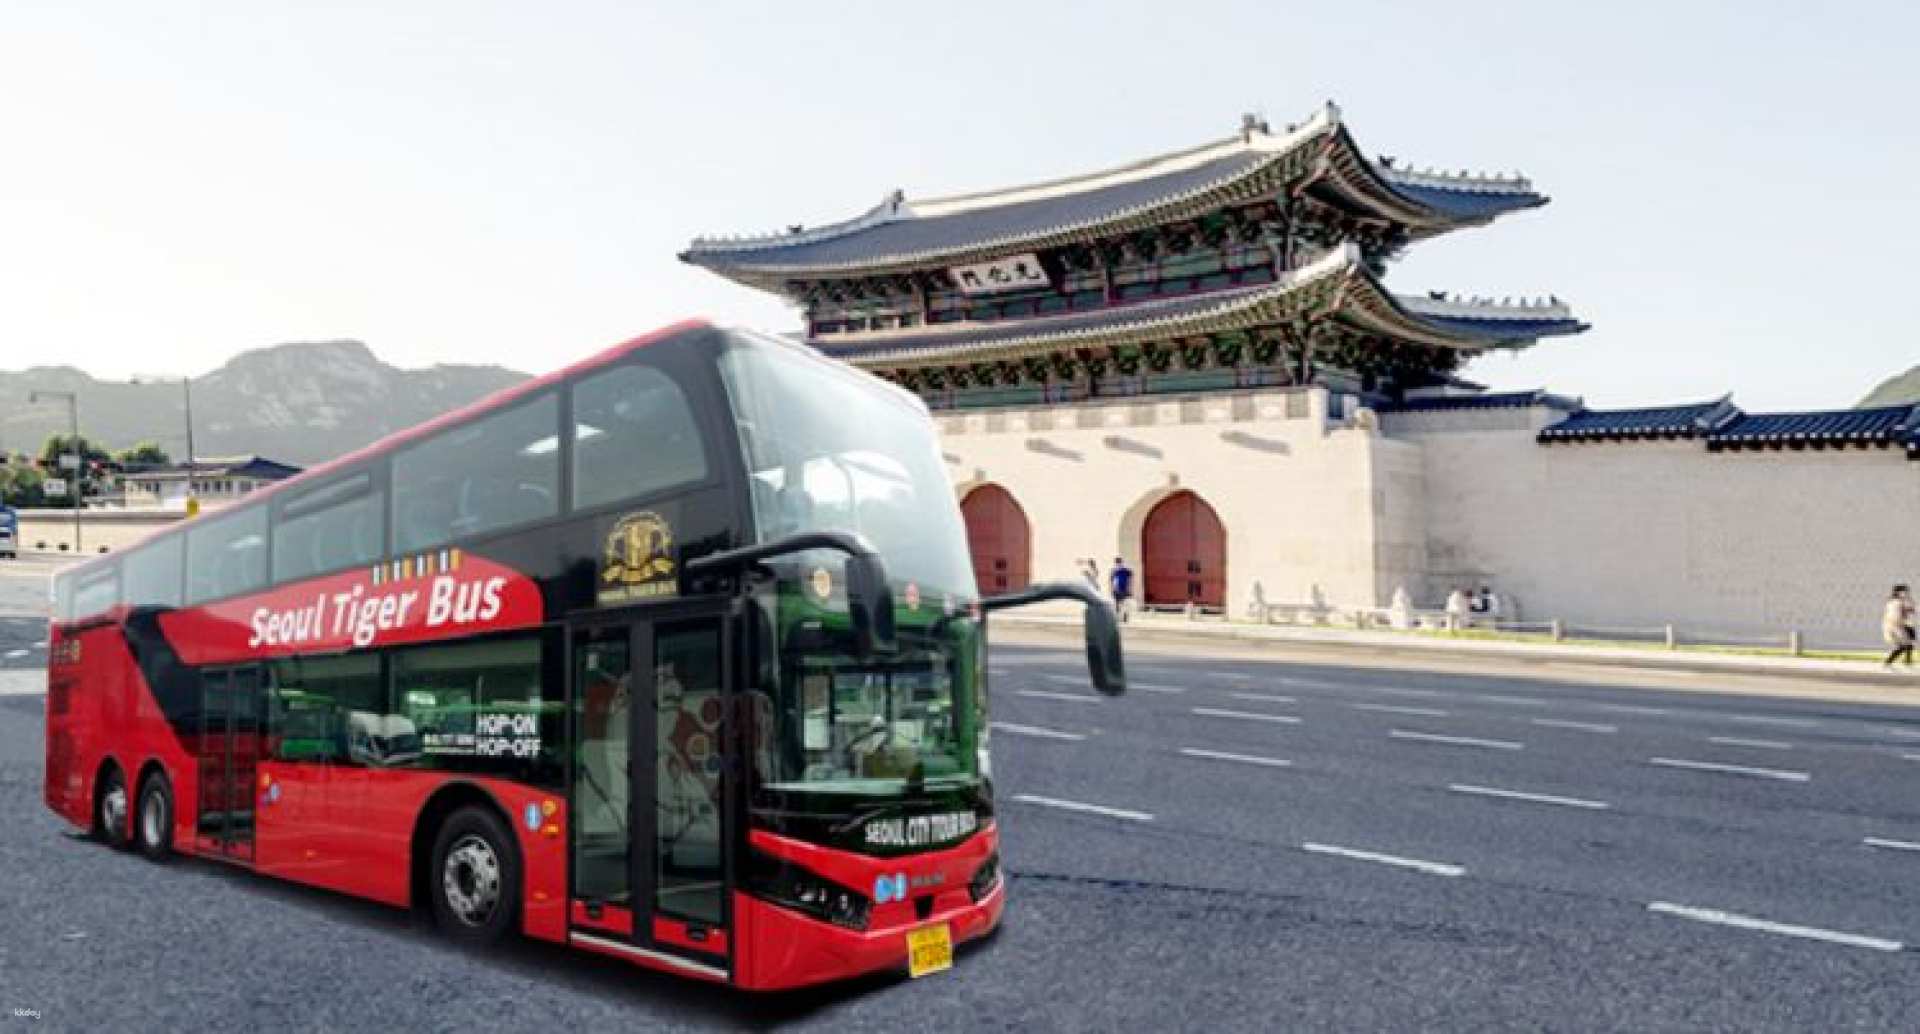 韓國-首爾交通票| 光化門城市觀光巴士| 市區故宮南山路線搭乘券